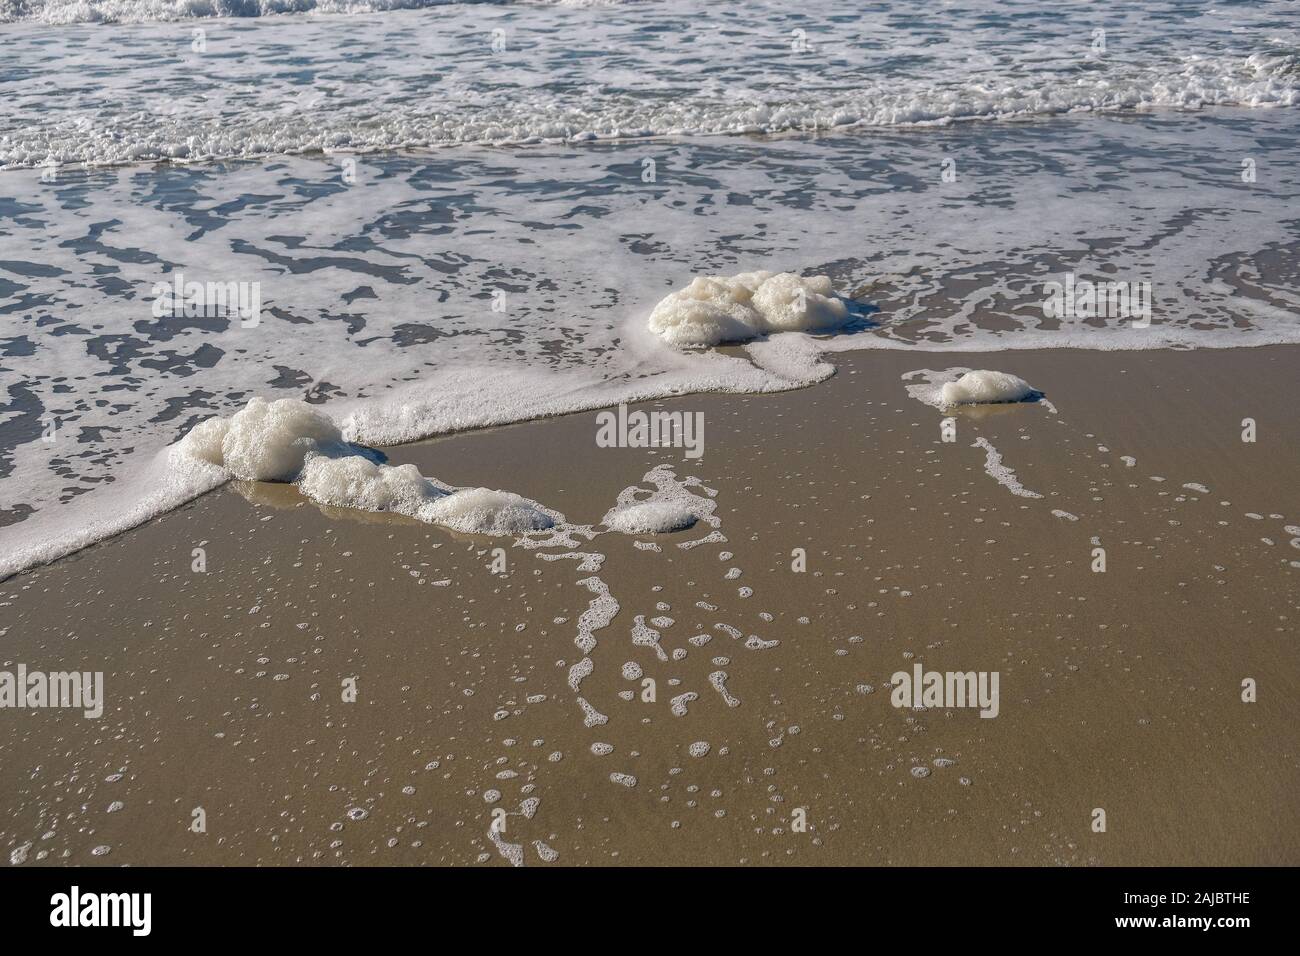 Inquinamento chimico di schiuma di mare sulla selvaggia costa del mare ecosistema,l'inquinamento contaminazione Foto Stock